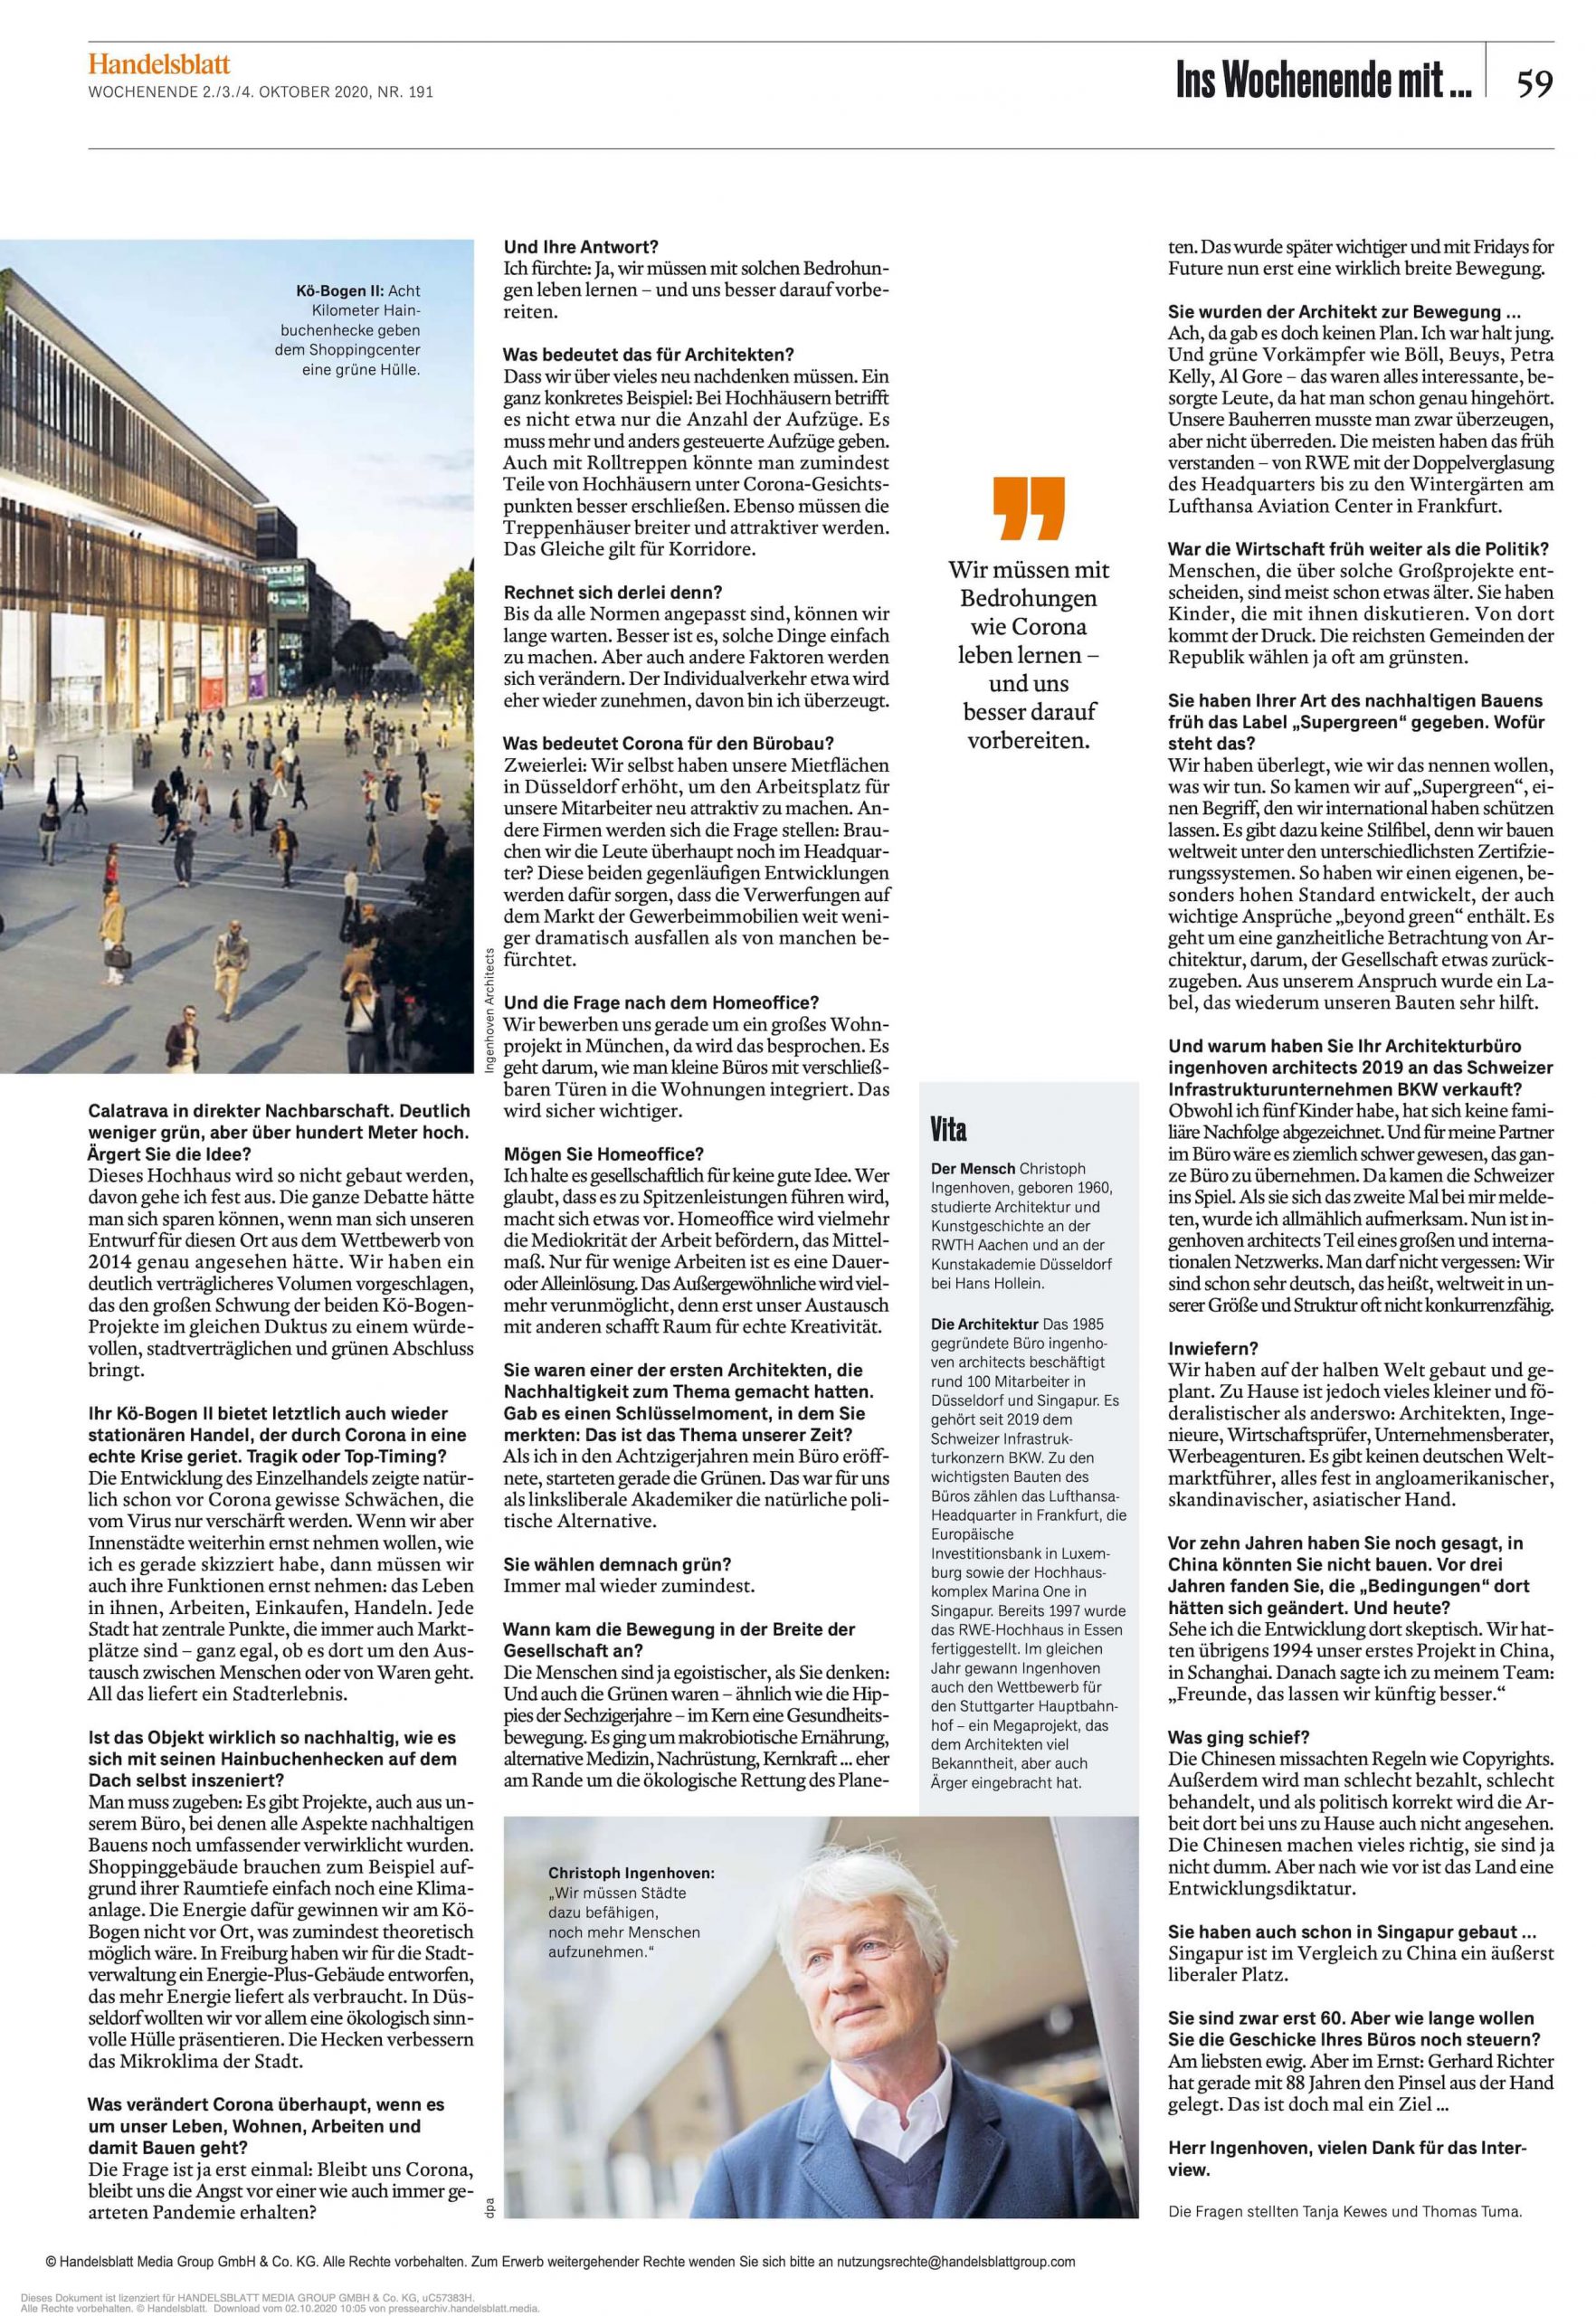 Interview Christoph Ingenhoven im Handelsblatt